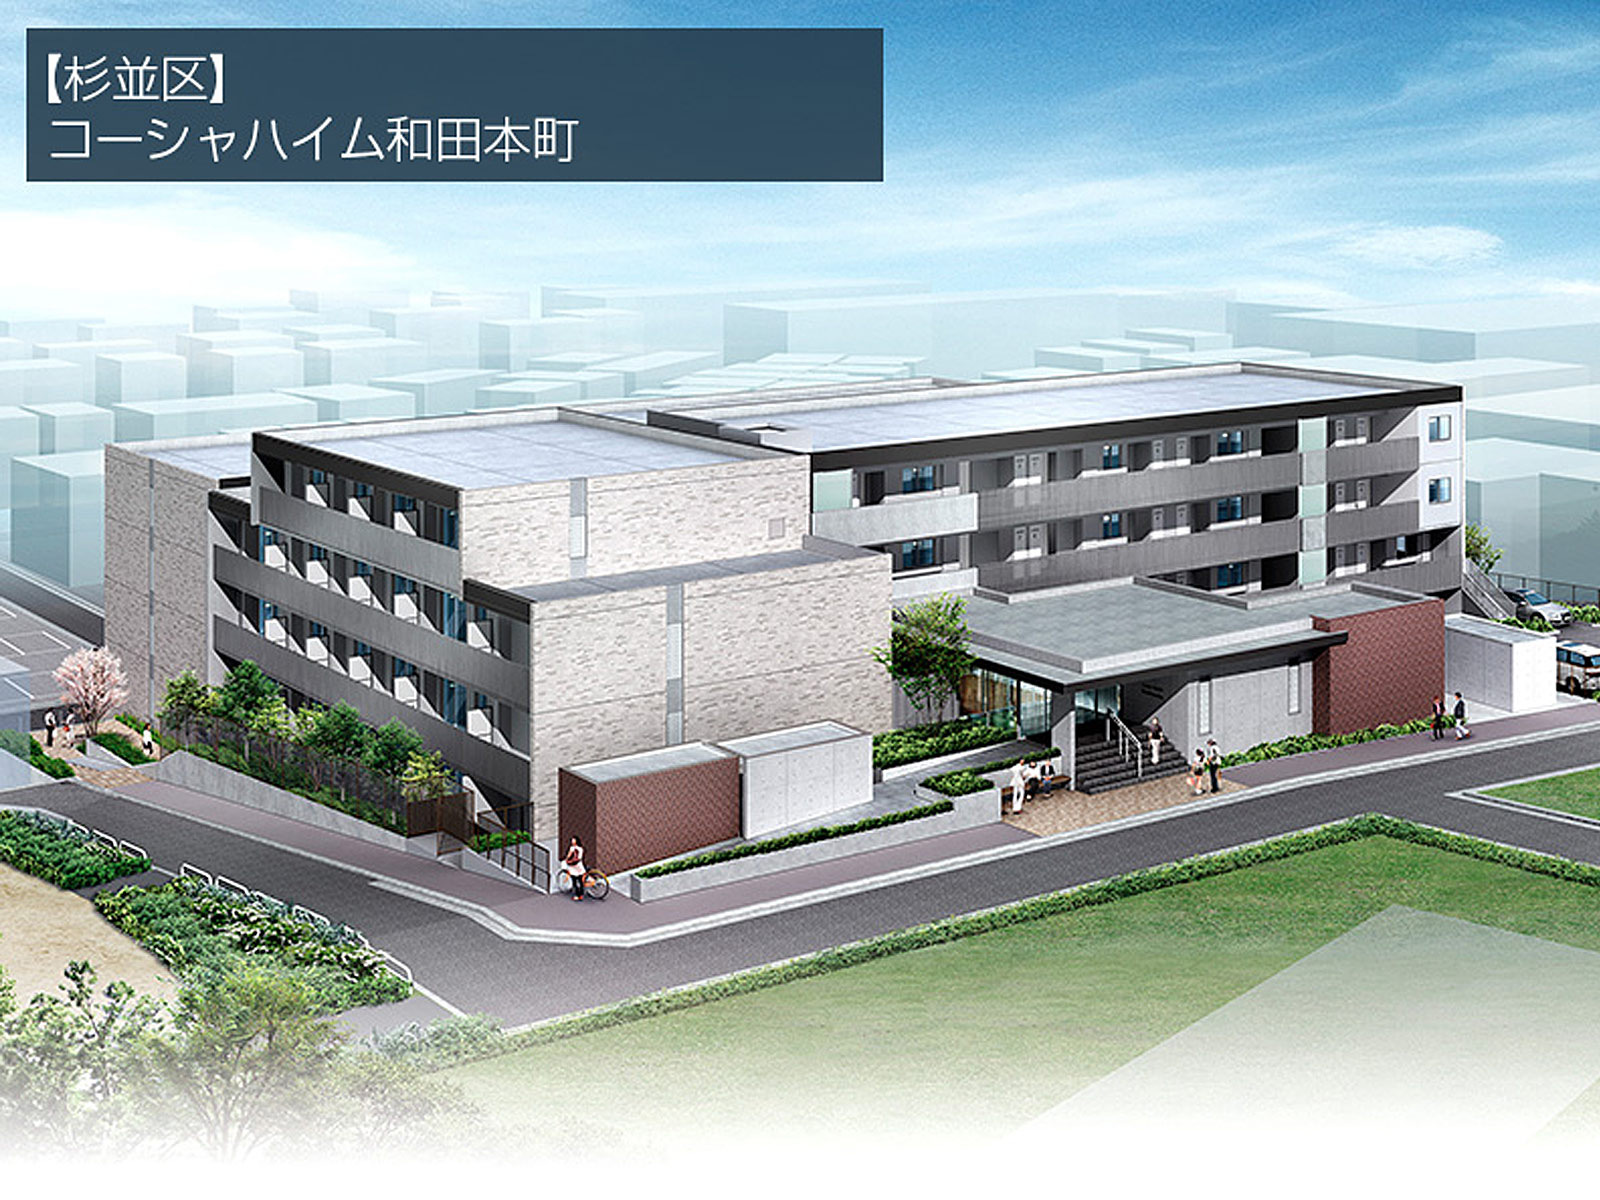 新築「コーシャハイム和田本町（仮称）」募集に向け建設中。資料請求は2020年5月下旬予定。